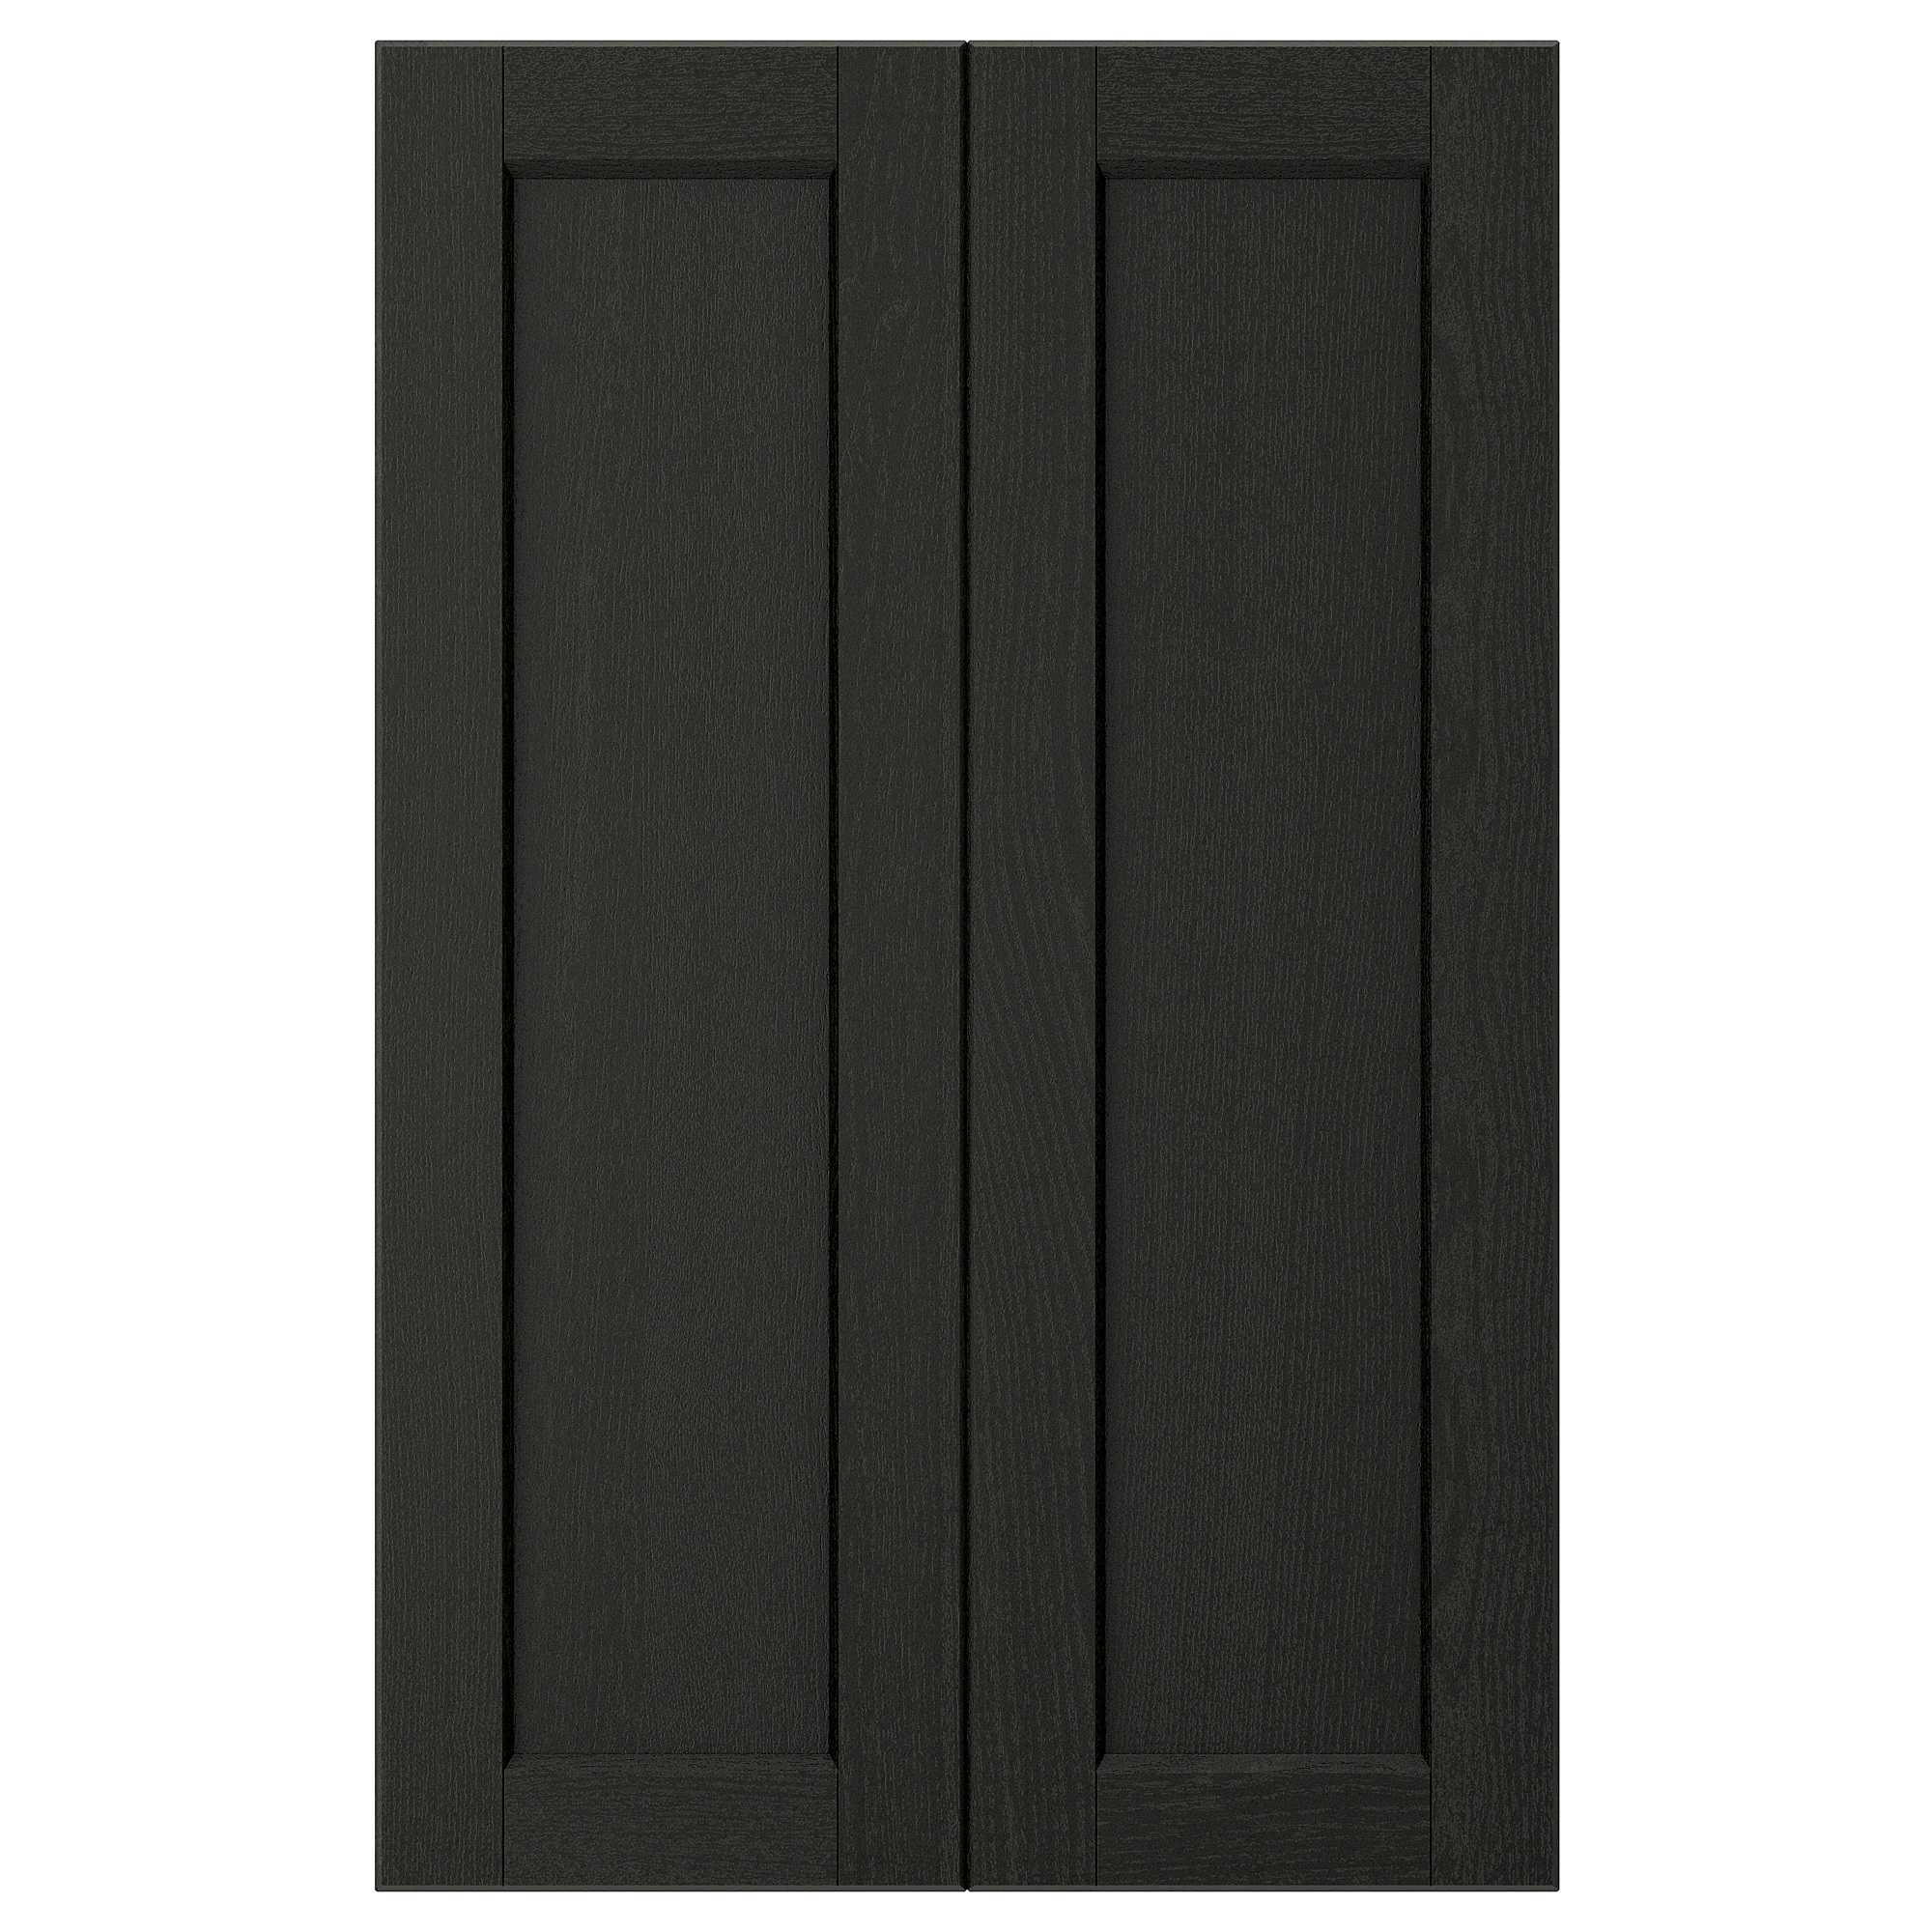 LERHYTTAN 2-p door f corner base cabinet set